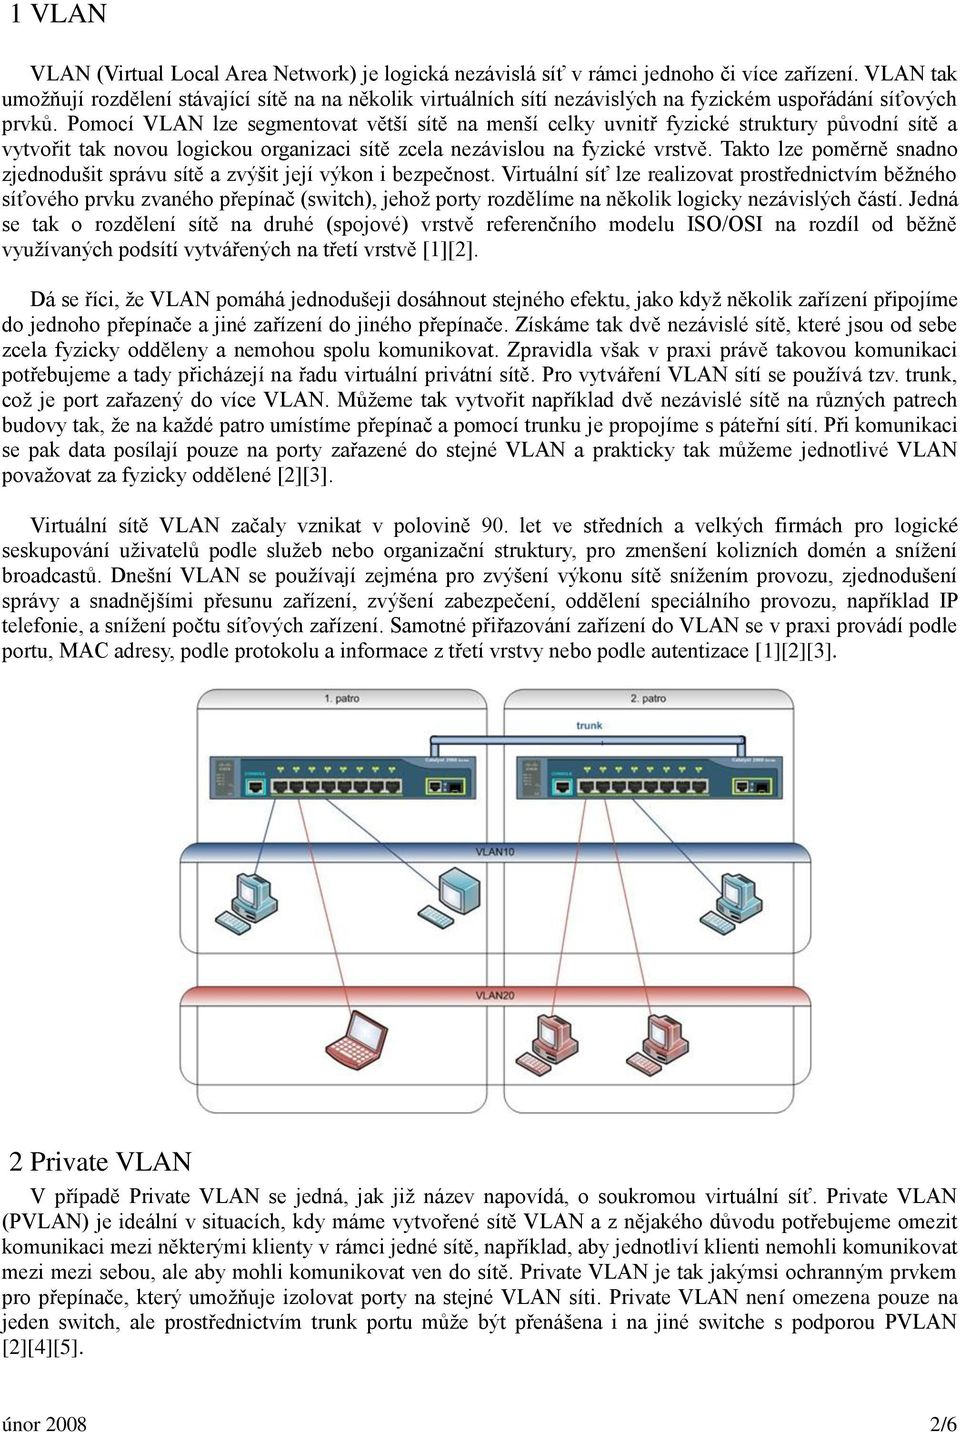 Pomocí VLAN lze segmentovat větší sítě na menší celky uvnitř fyzické struktury původní sítě a vytvořit tak novou logickou organizaci sítě zcela nezávislou na fyzické vrstvě.